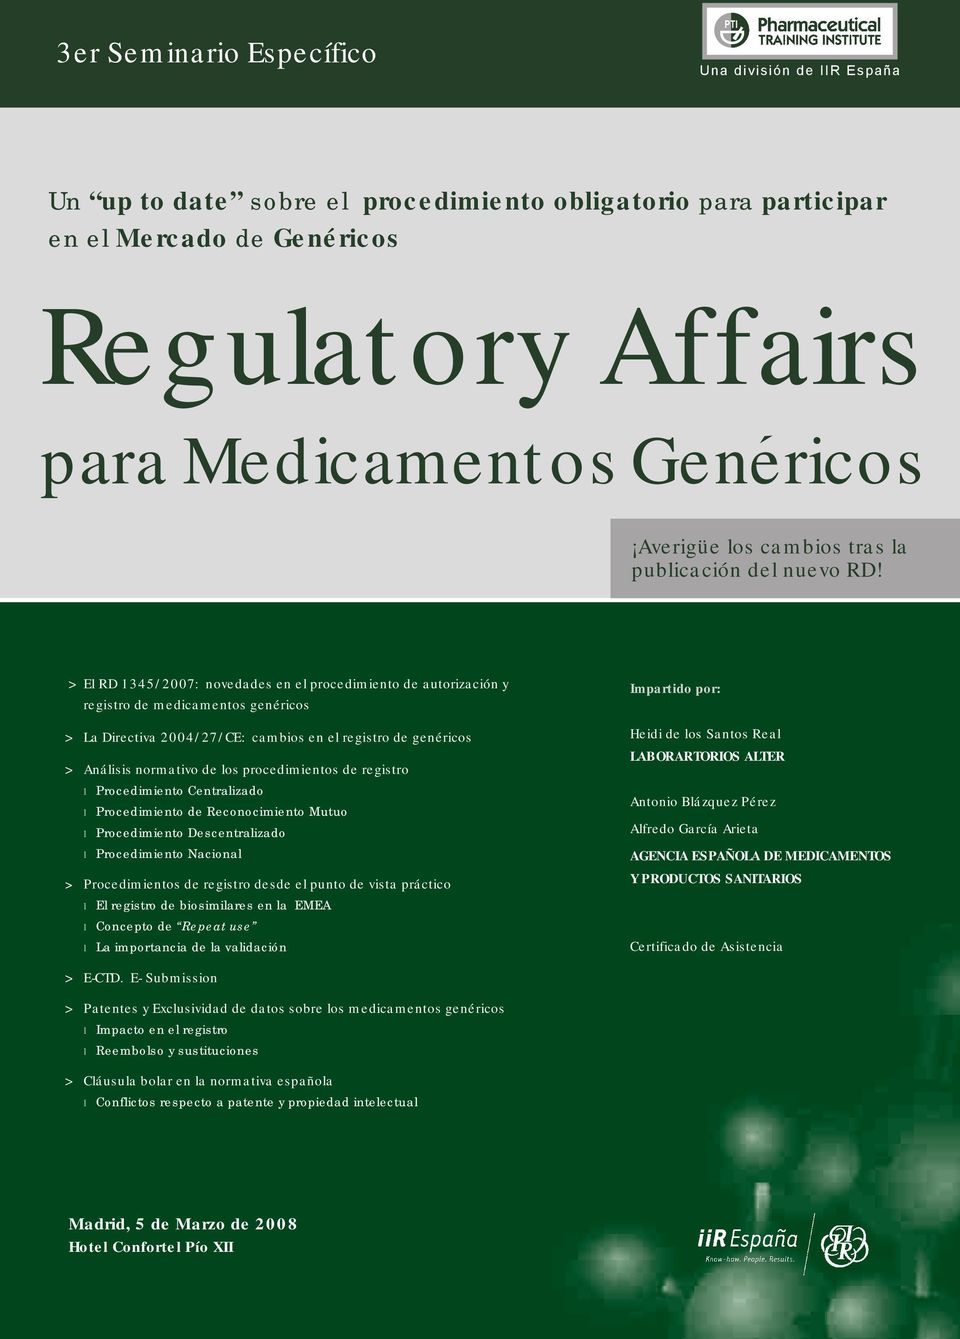 > El RD 1345/2007: novedades en el procedimiento de autorización y registro de medicamentos genéricos > La Directiva 2004/27/CE: cambios en el registro de genéricos > Análisis normativo de los